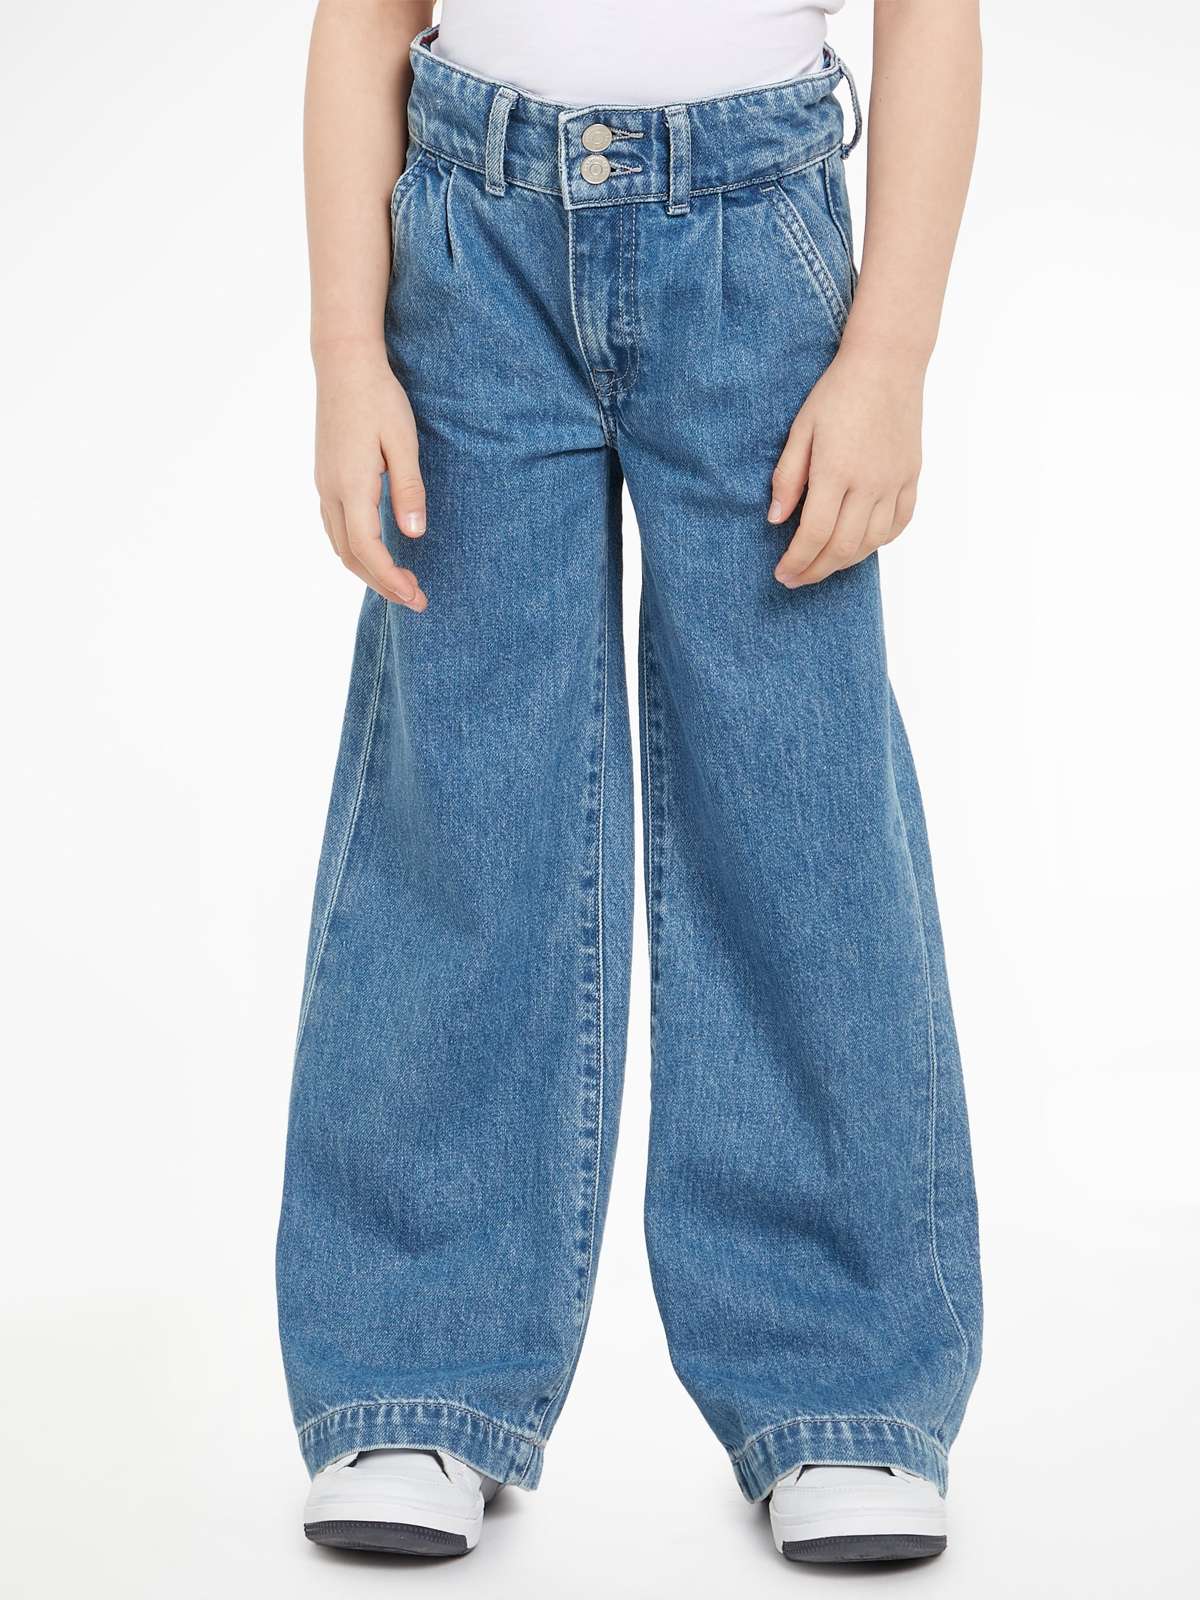 Широкие джинсы с кожаной фирменной этикеткой на поясе сзади.